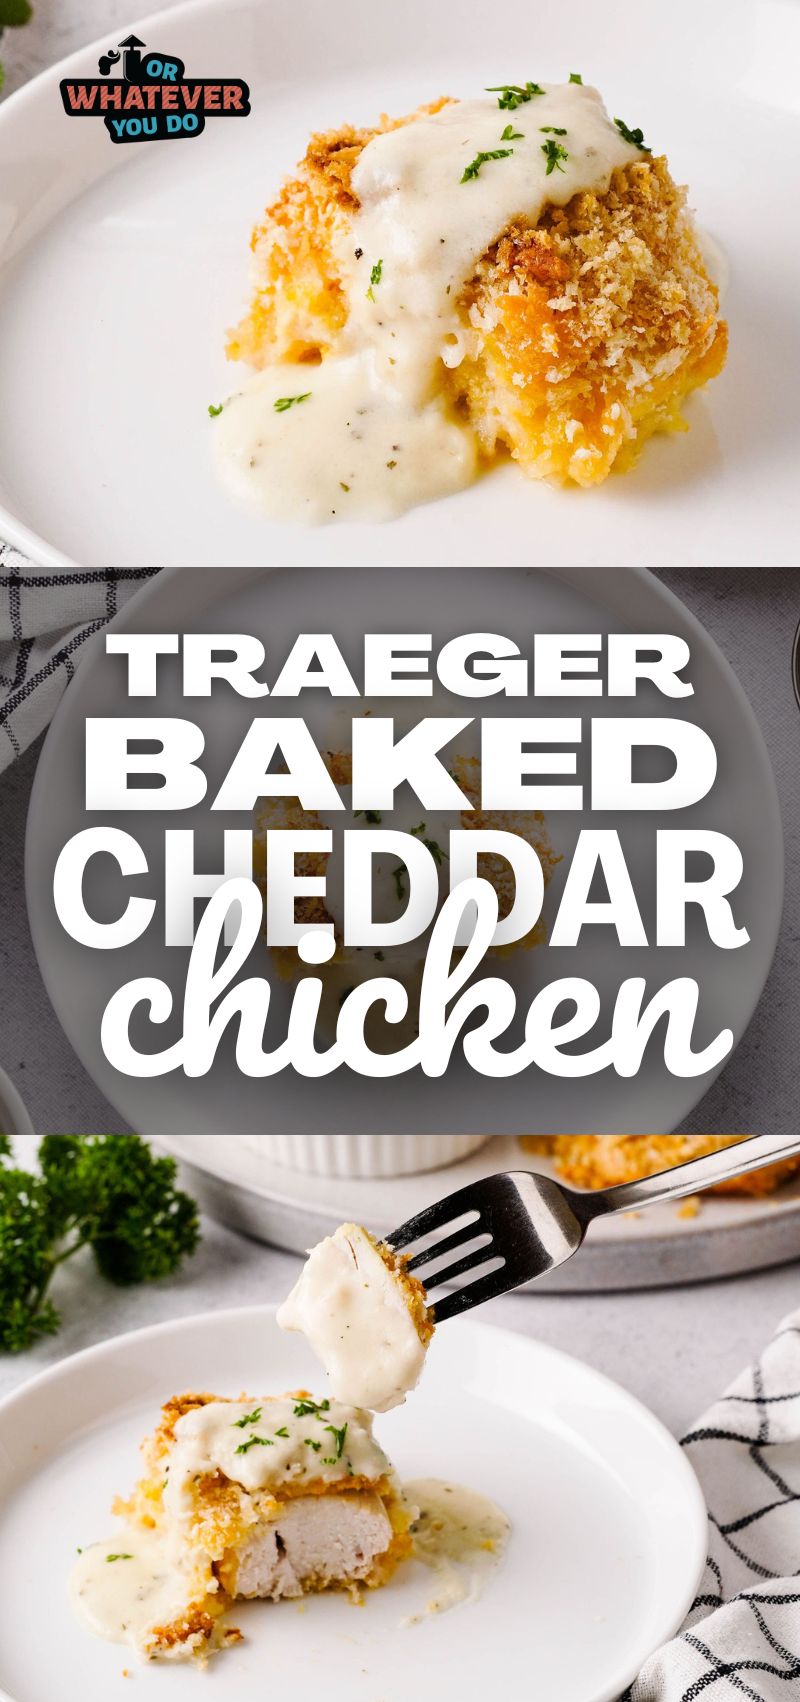 Traeger Baked Cheddar Chicken